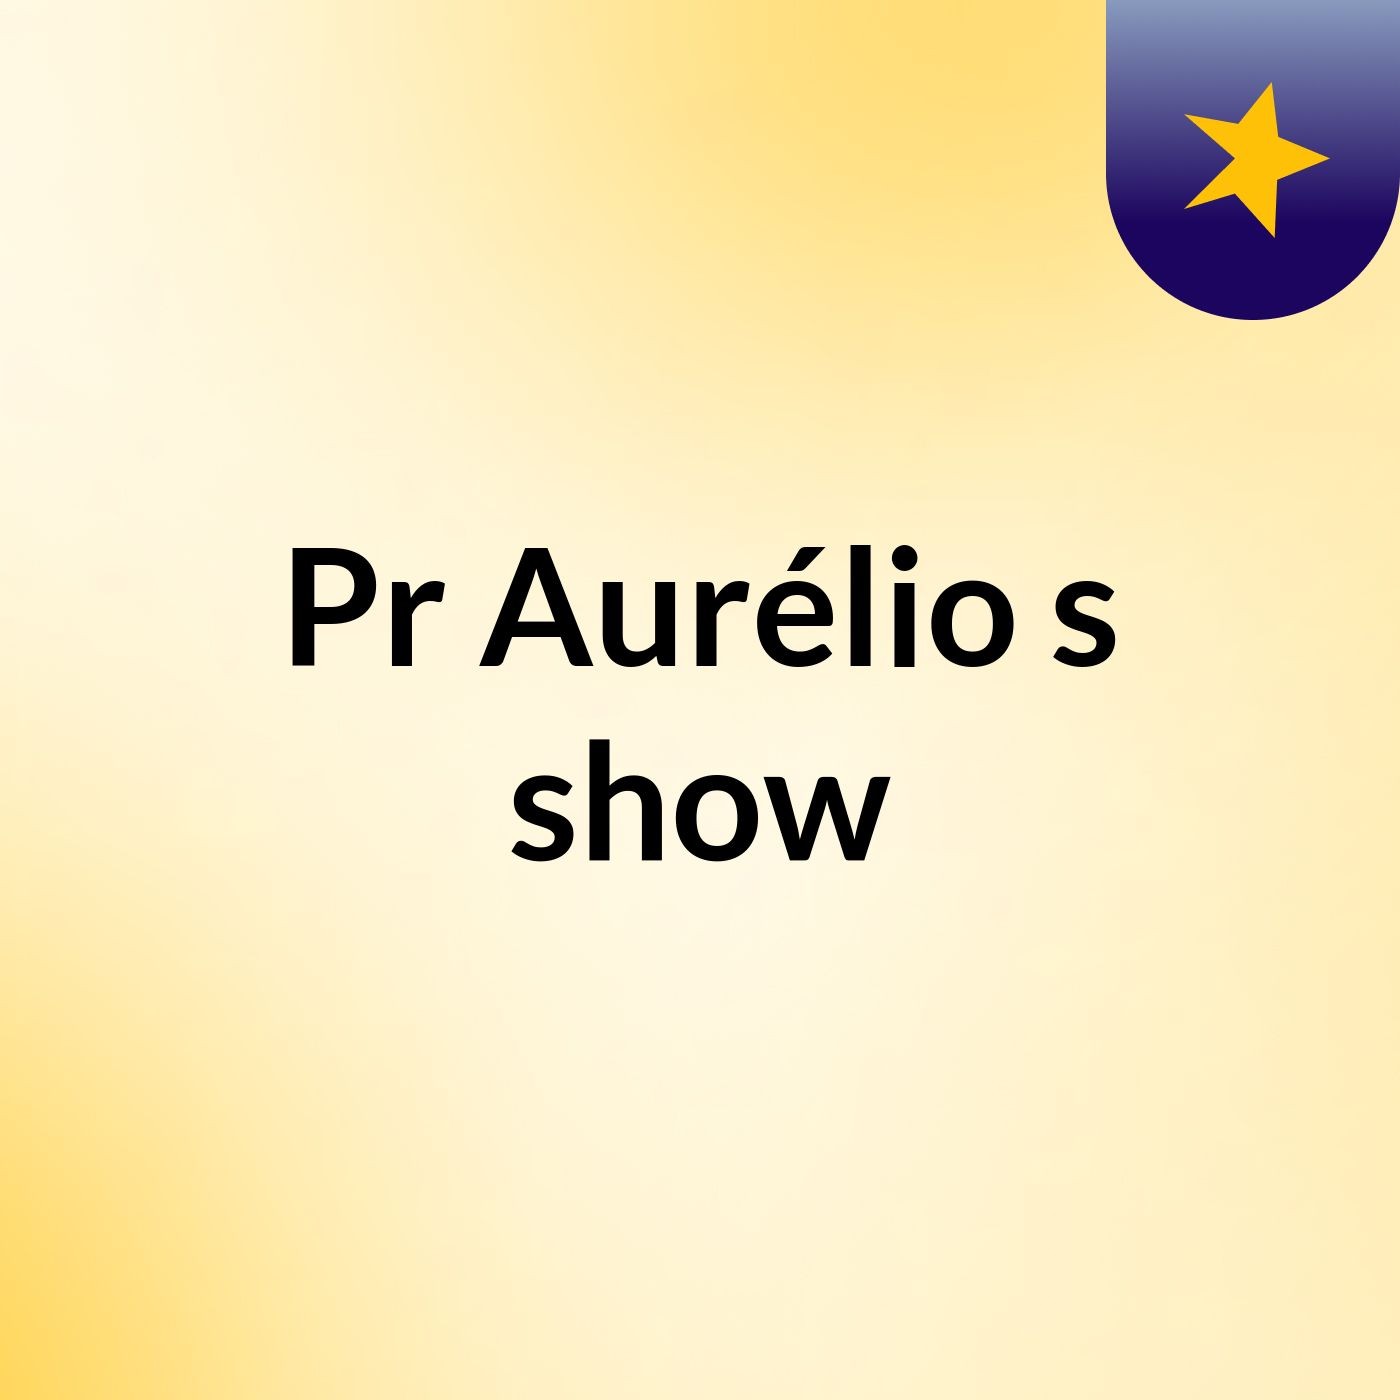 Pr Aurélio's show